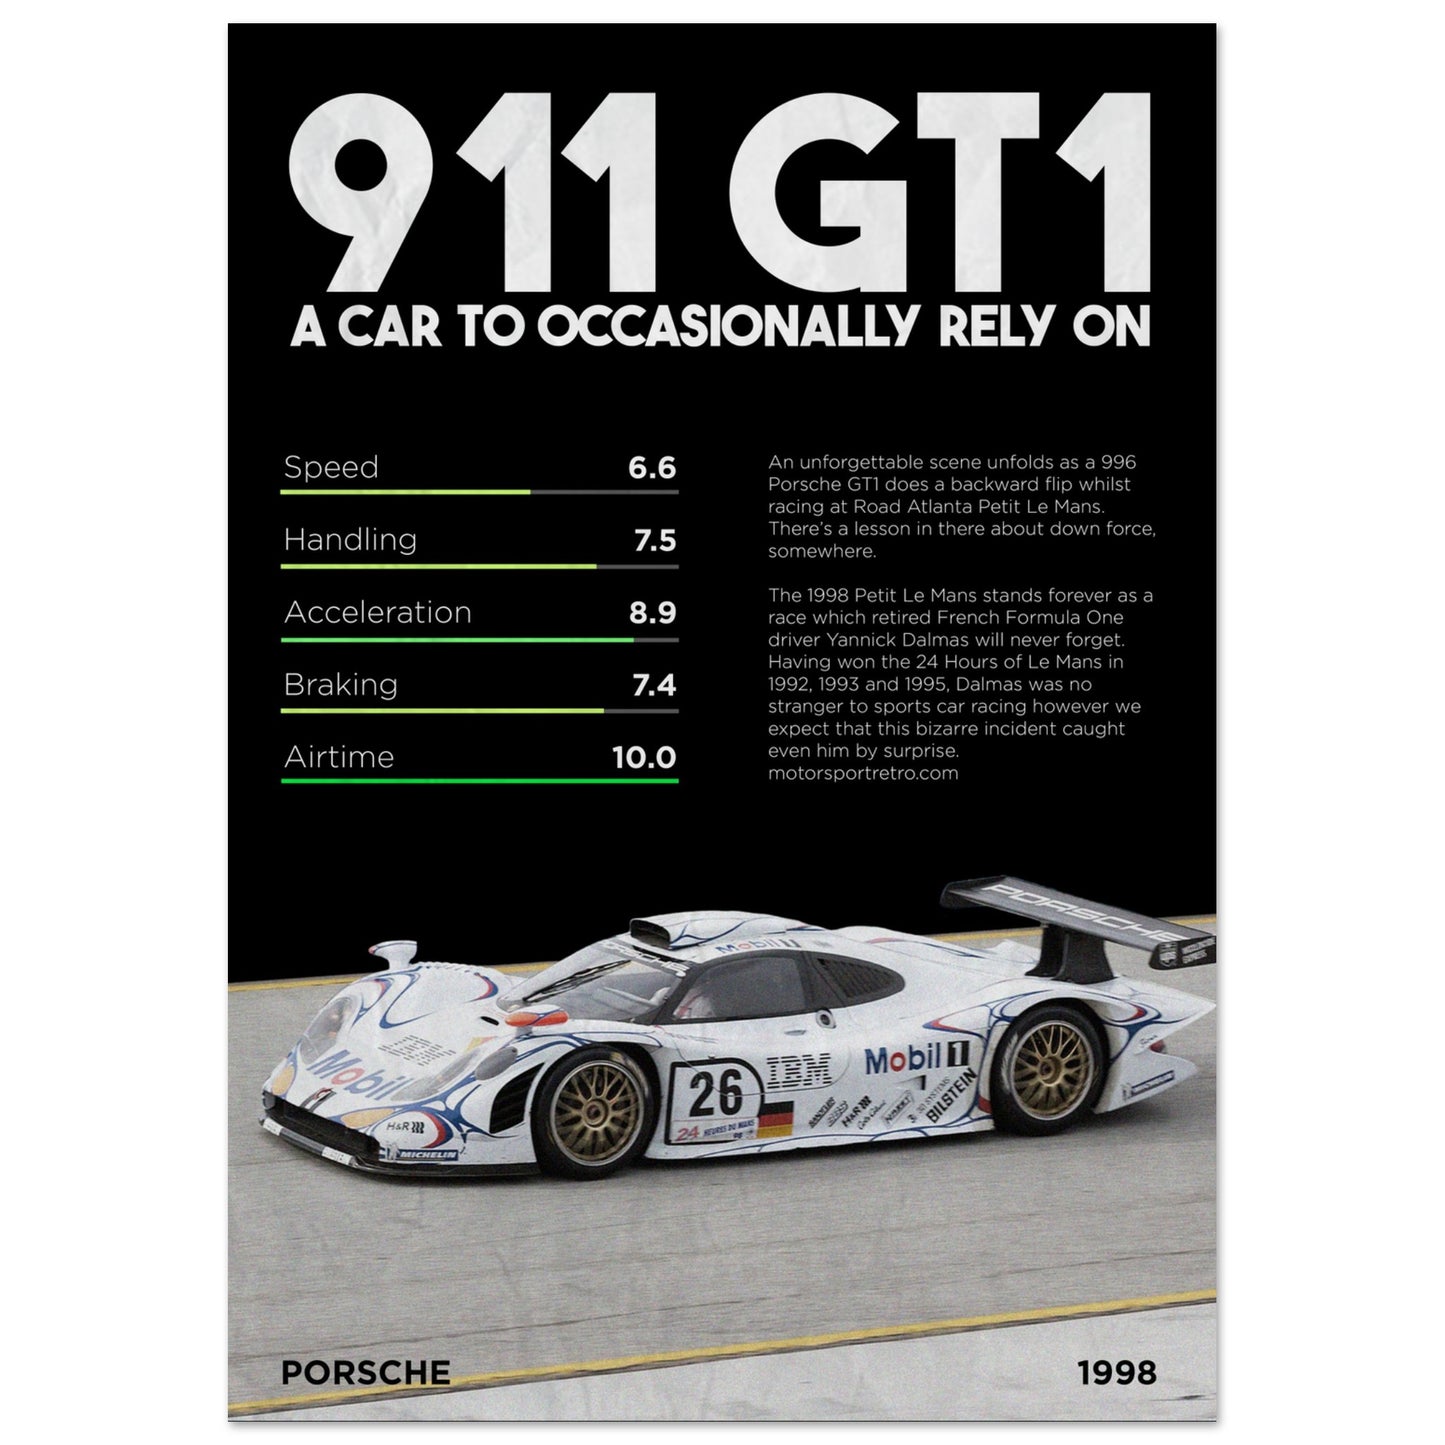 911 GT1 - Racecar Poster